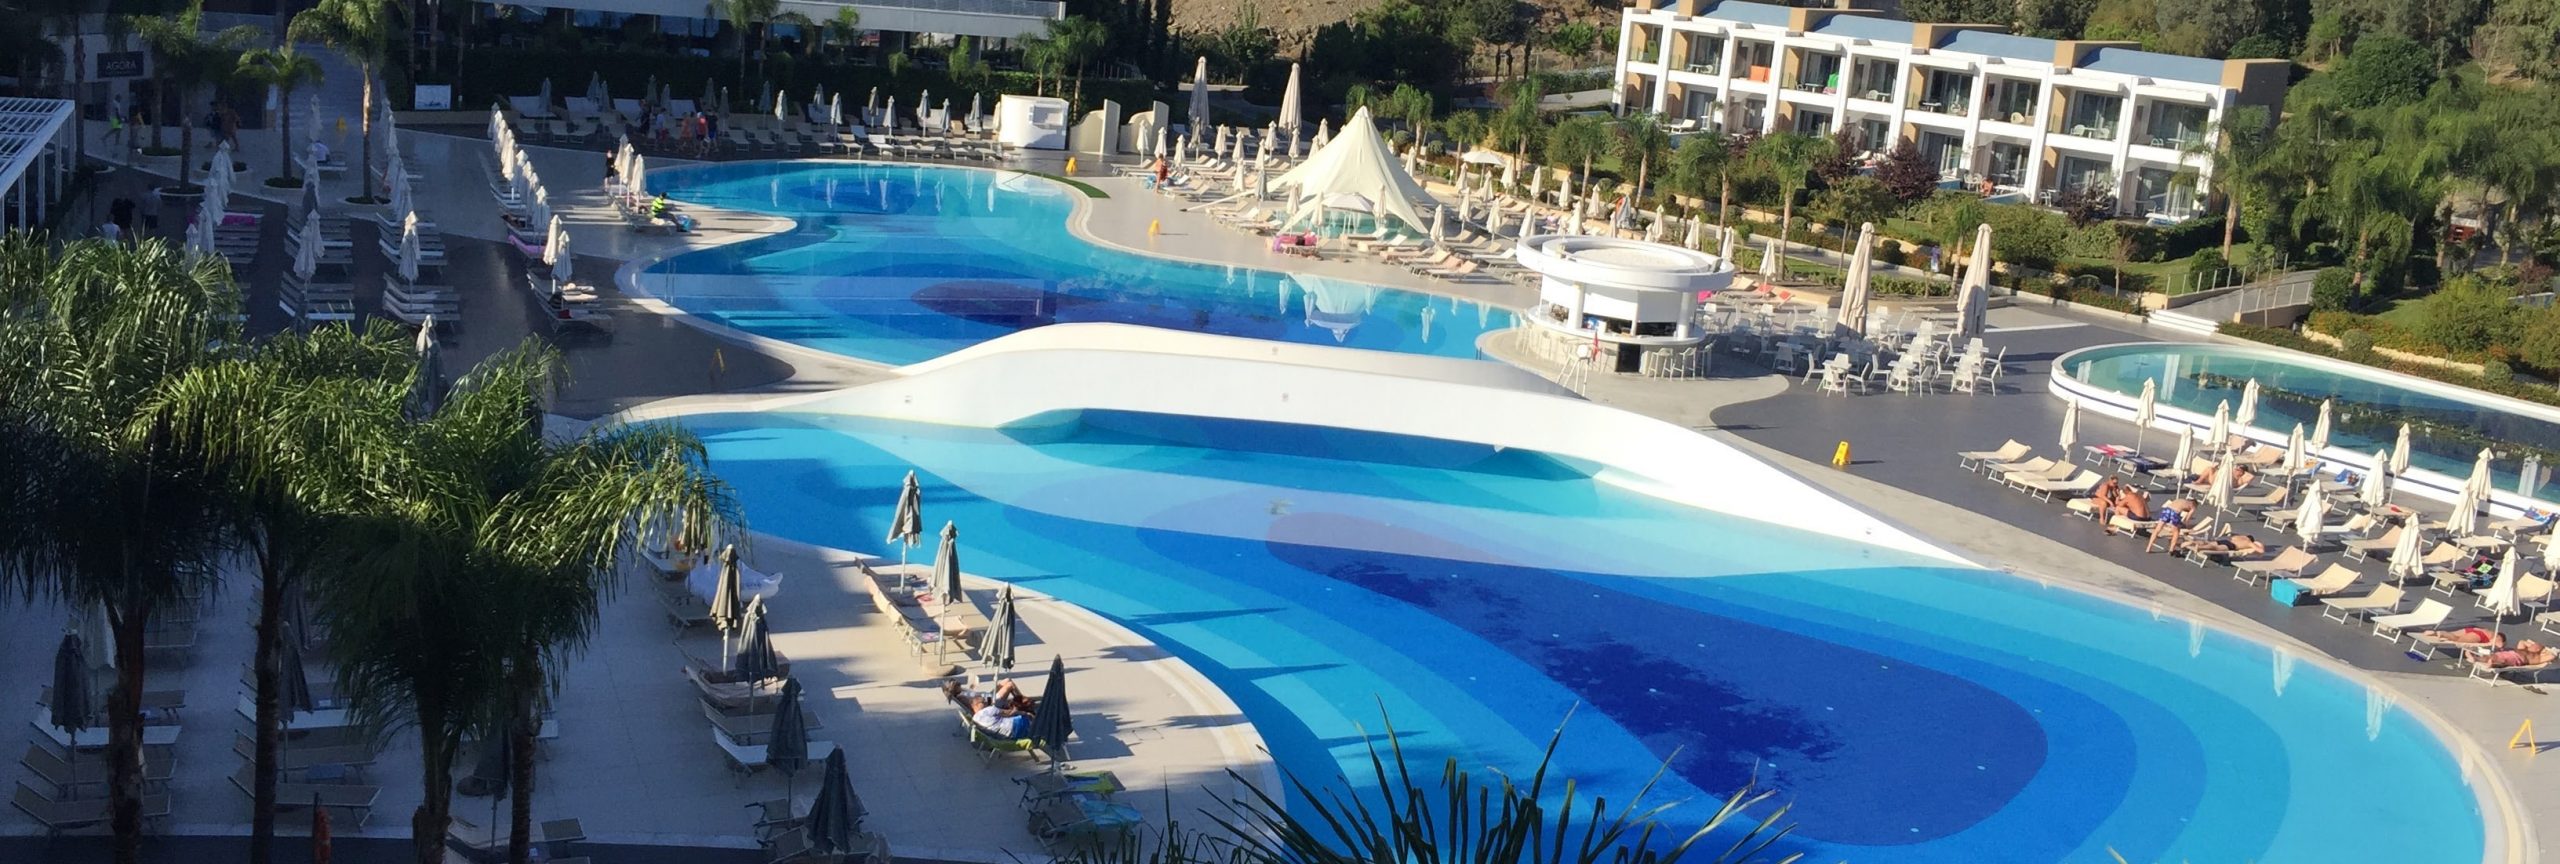 Turkije hotel met zwembad - De Planeet Reizen